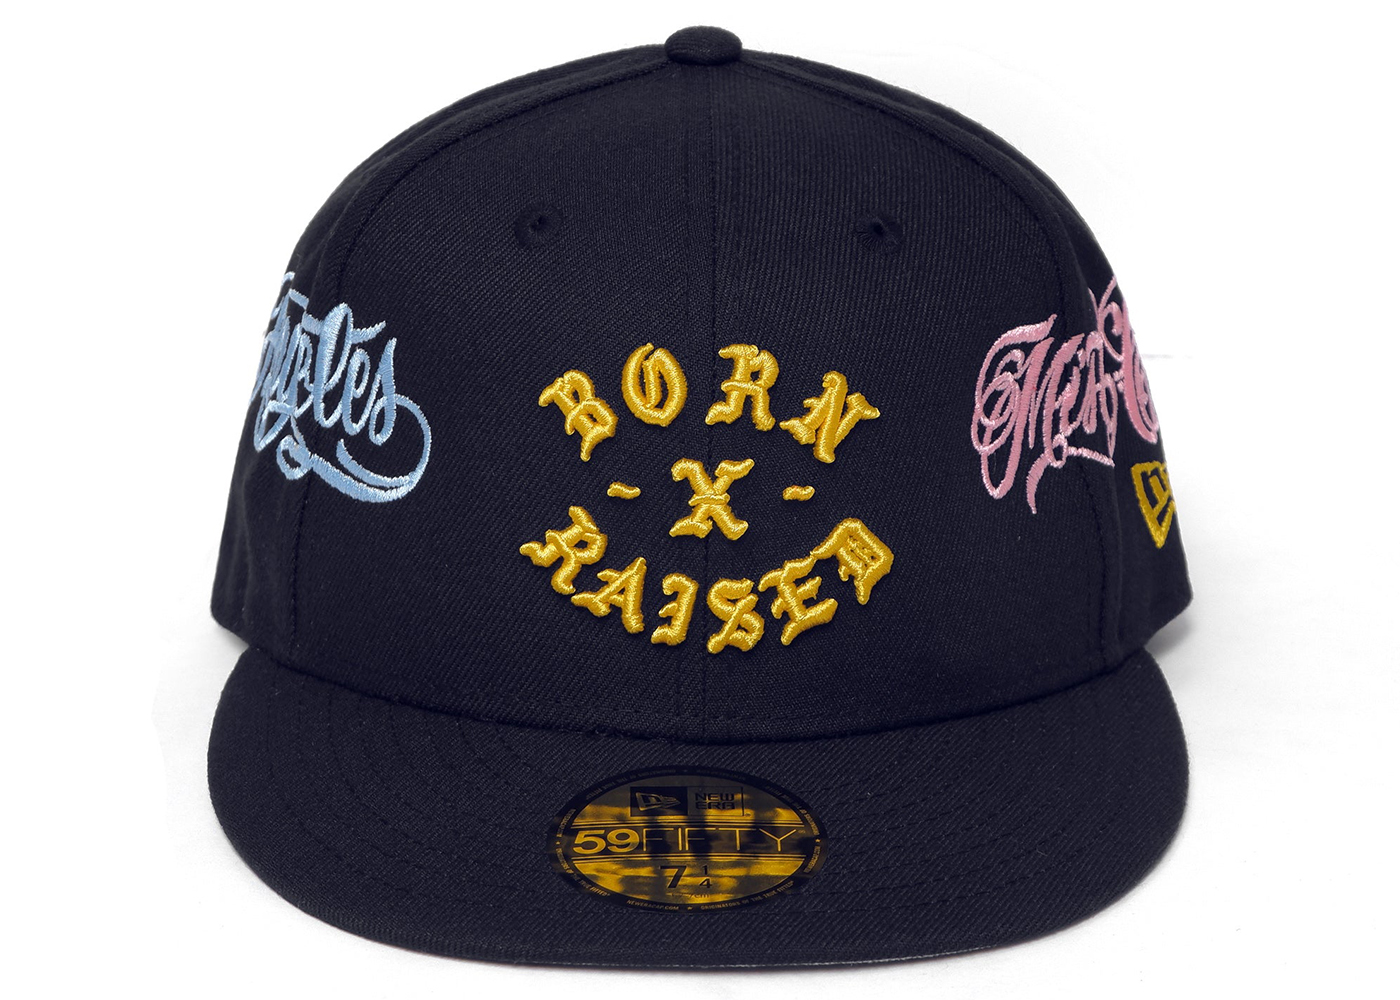 Born X Raised x Mister Cartoon x New Era Rocker 59Fifty Fitted Hat 